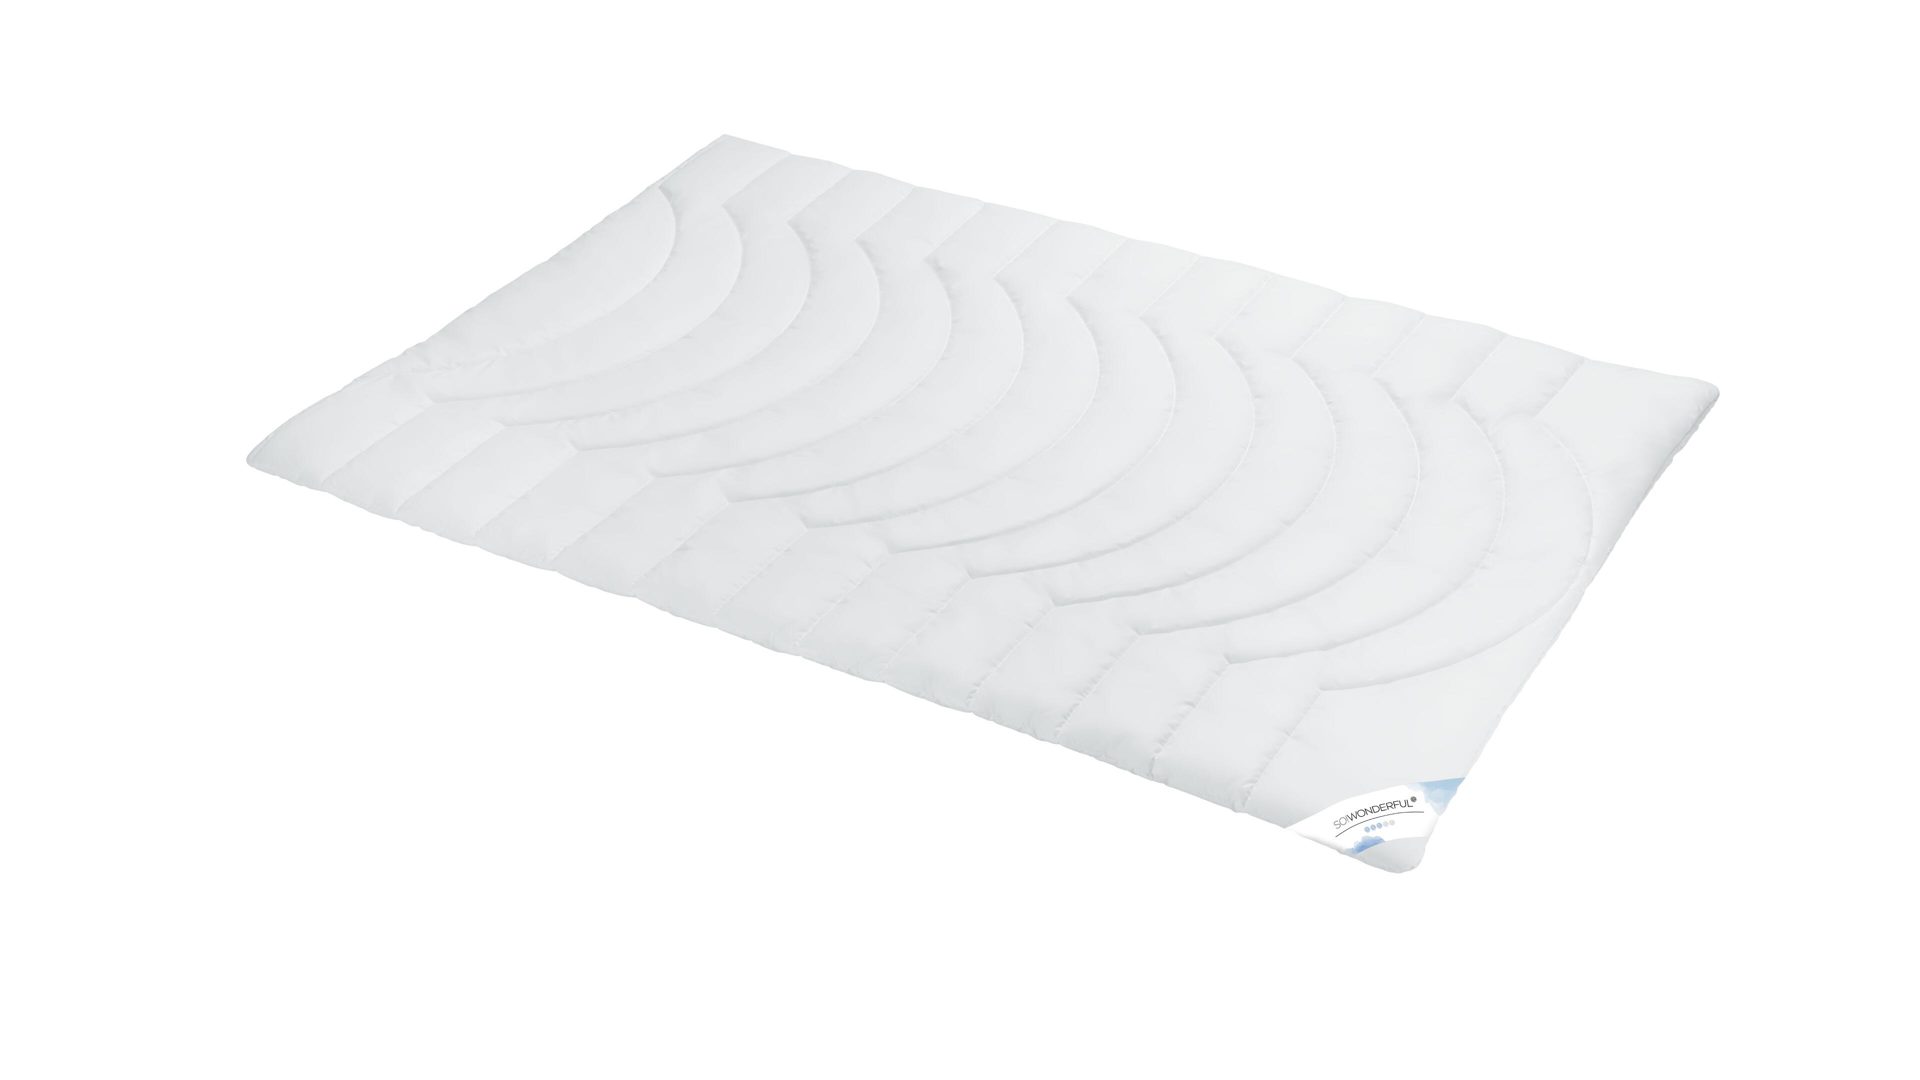 Faserdecke SO!WONDERFUL aus Stoff in Weiß SO!WONDERFUL Faserdecke Premium 3D-Hohlfaser, 900 g – ca. 155 x 220 cm